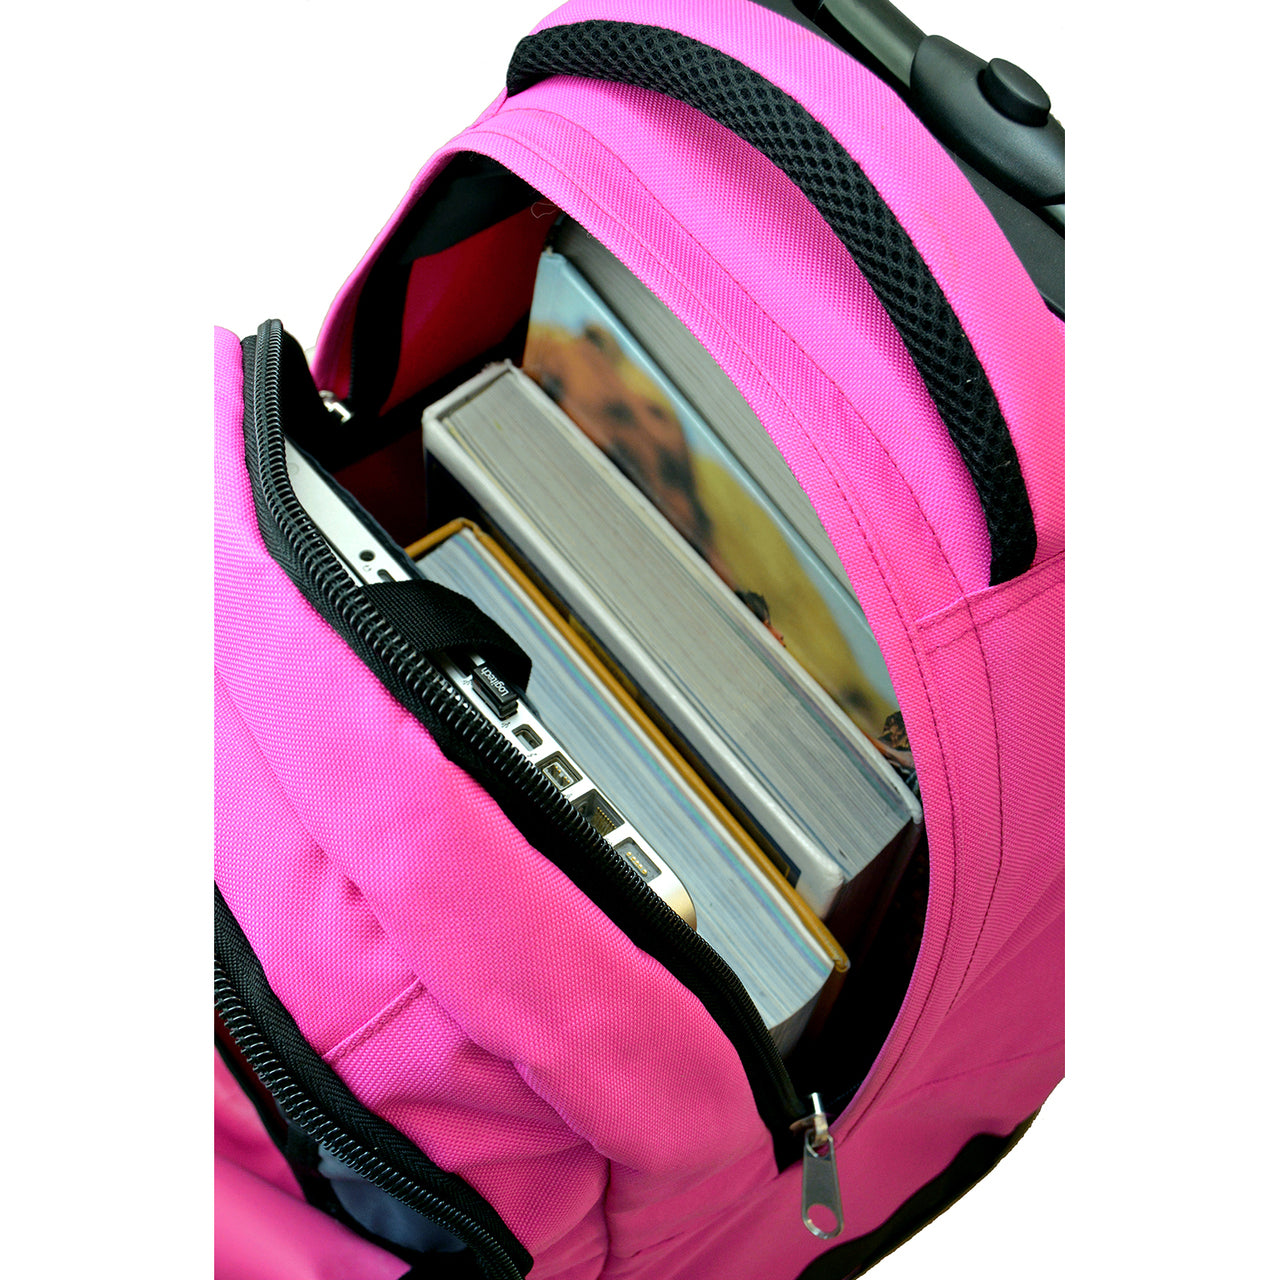 Arizona State Premium Wheeled Backpack in Pink